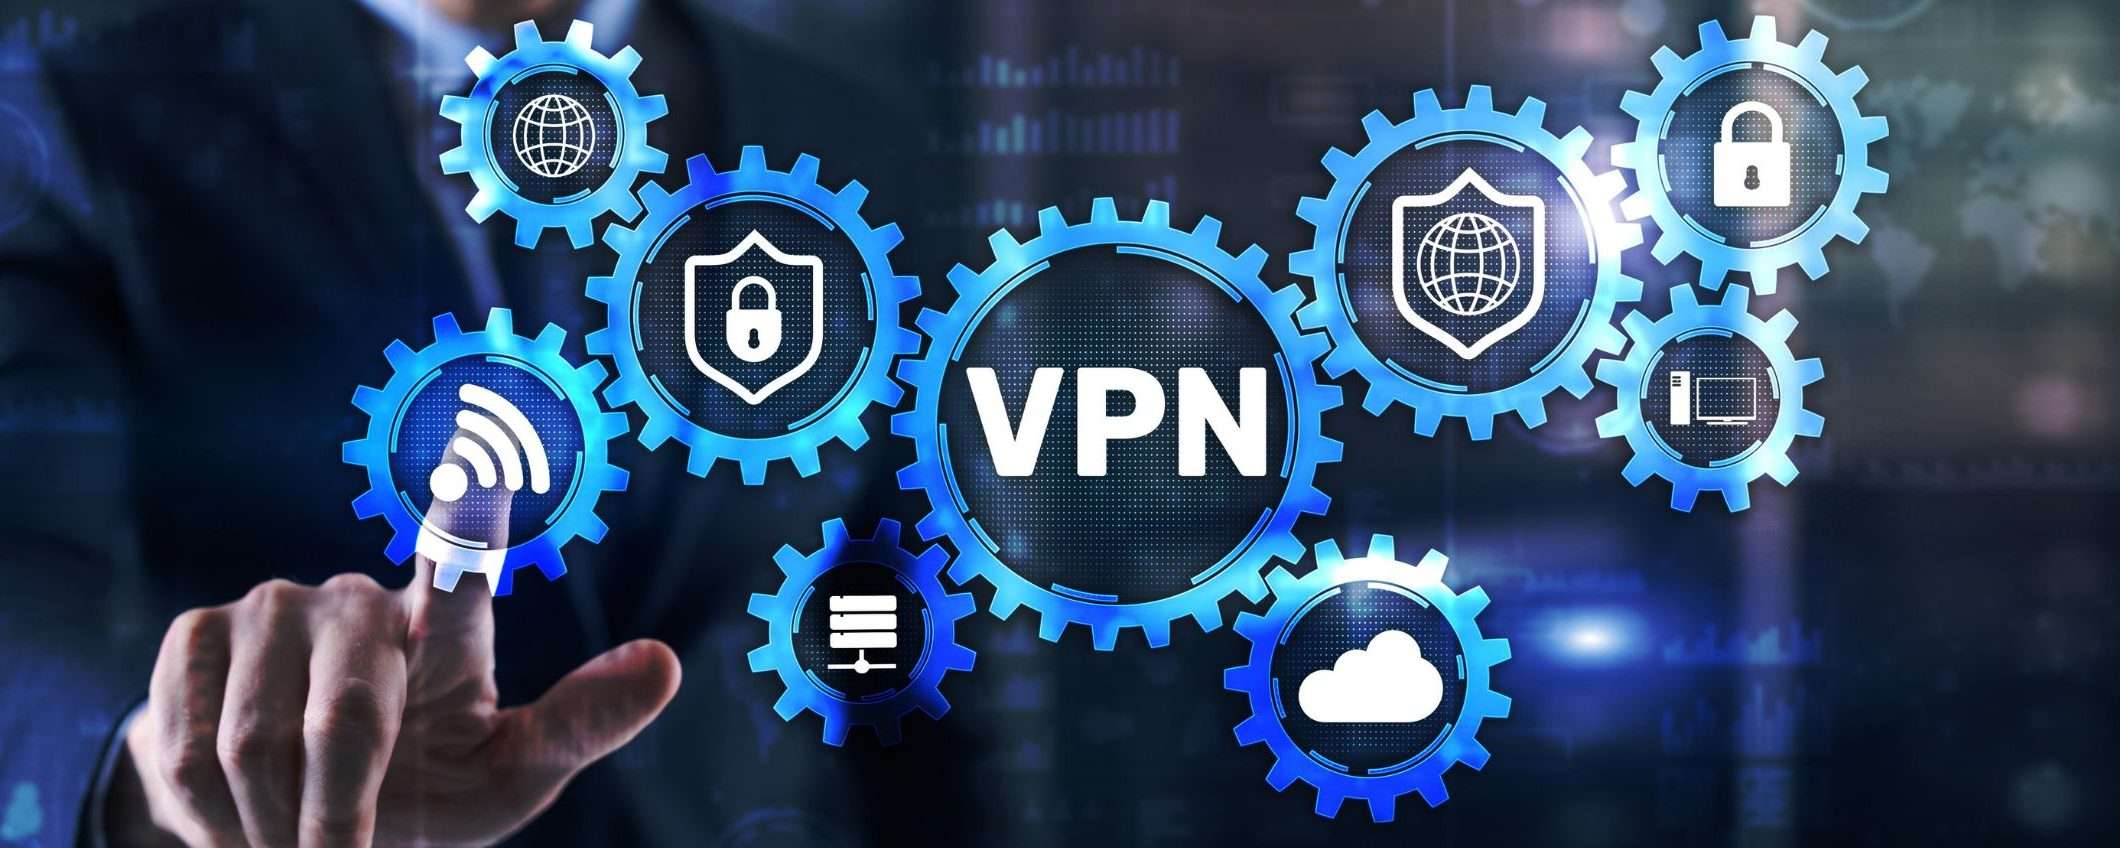 Private Internet Access, VPN a meno di 2 euro al mese